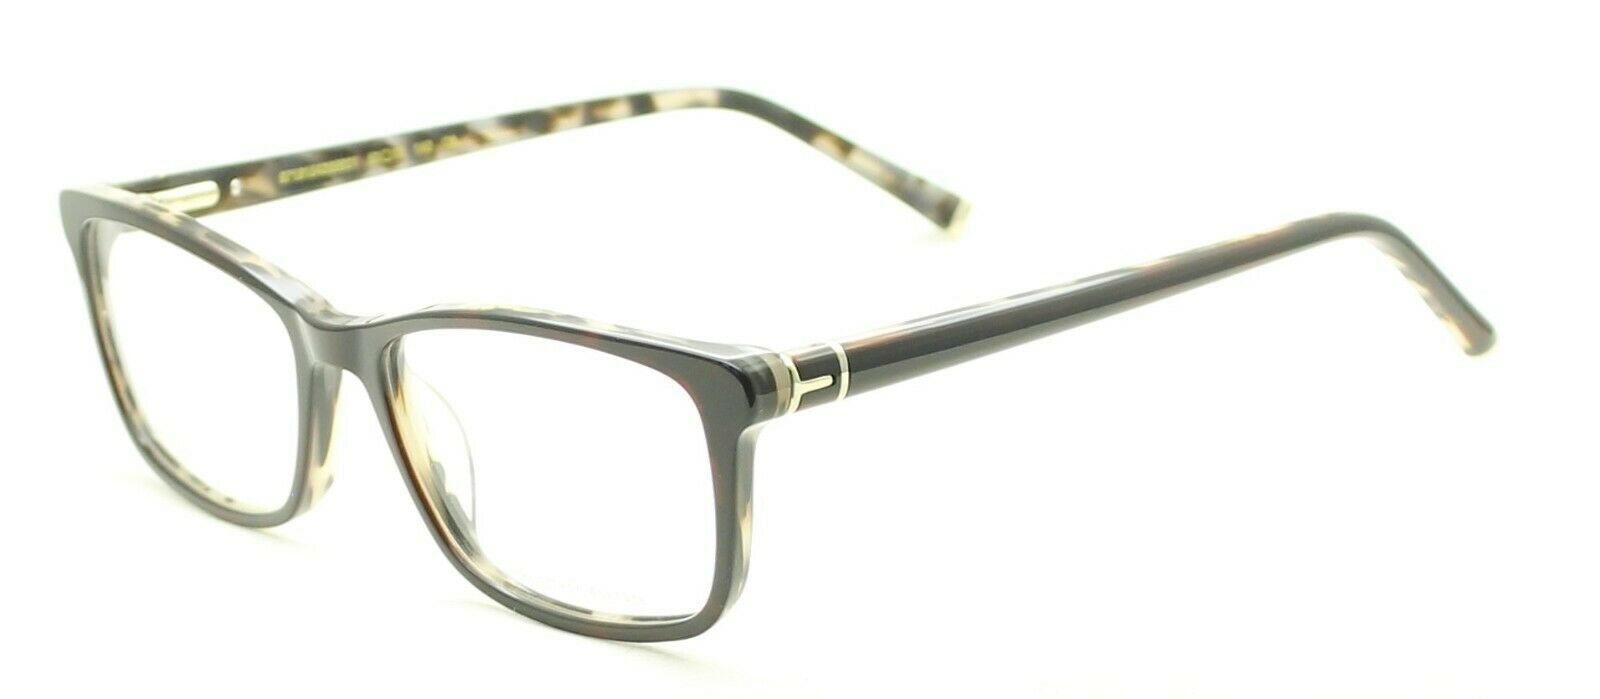 HERITAGE Iconic Luxury HEHF41 NH Eyewear FRAMES Eyeglasses RX Optical Glasses